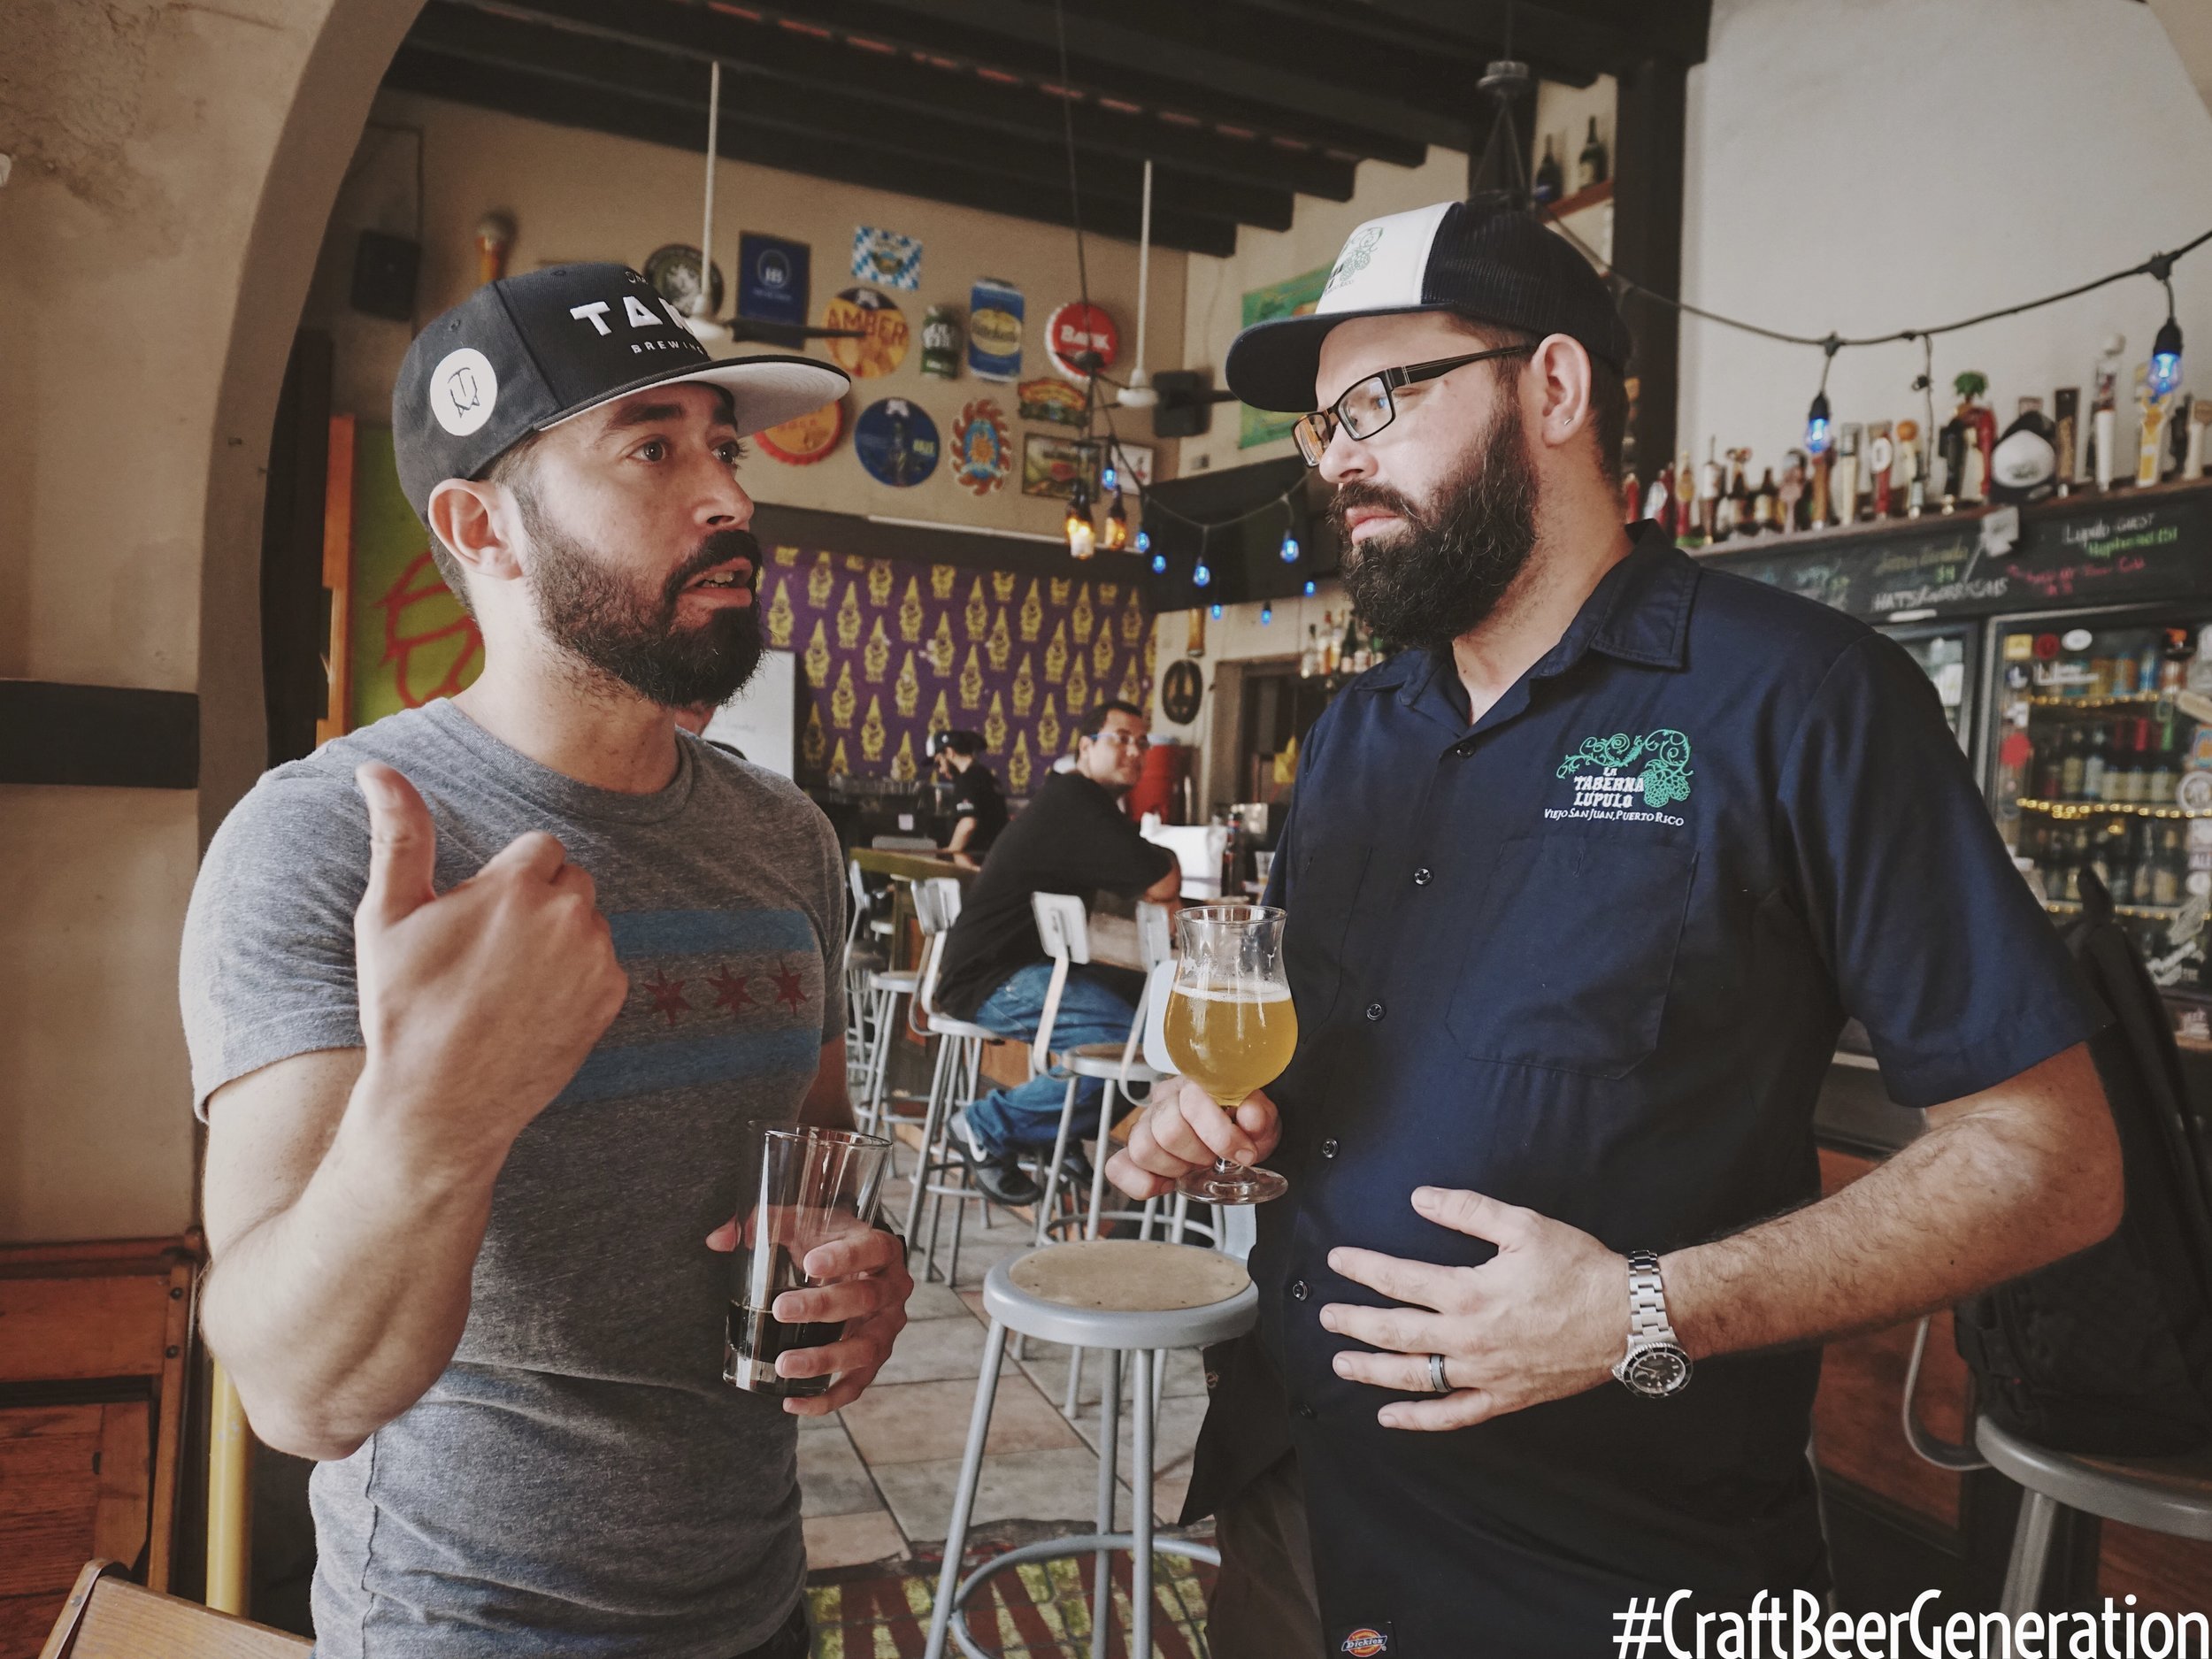 De izquierda a derecha: Gustavo Franceschini de Craft Beer Generation y Jake Liman, Dueño de La Taberna Lúpulo.